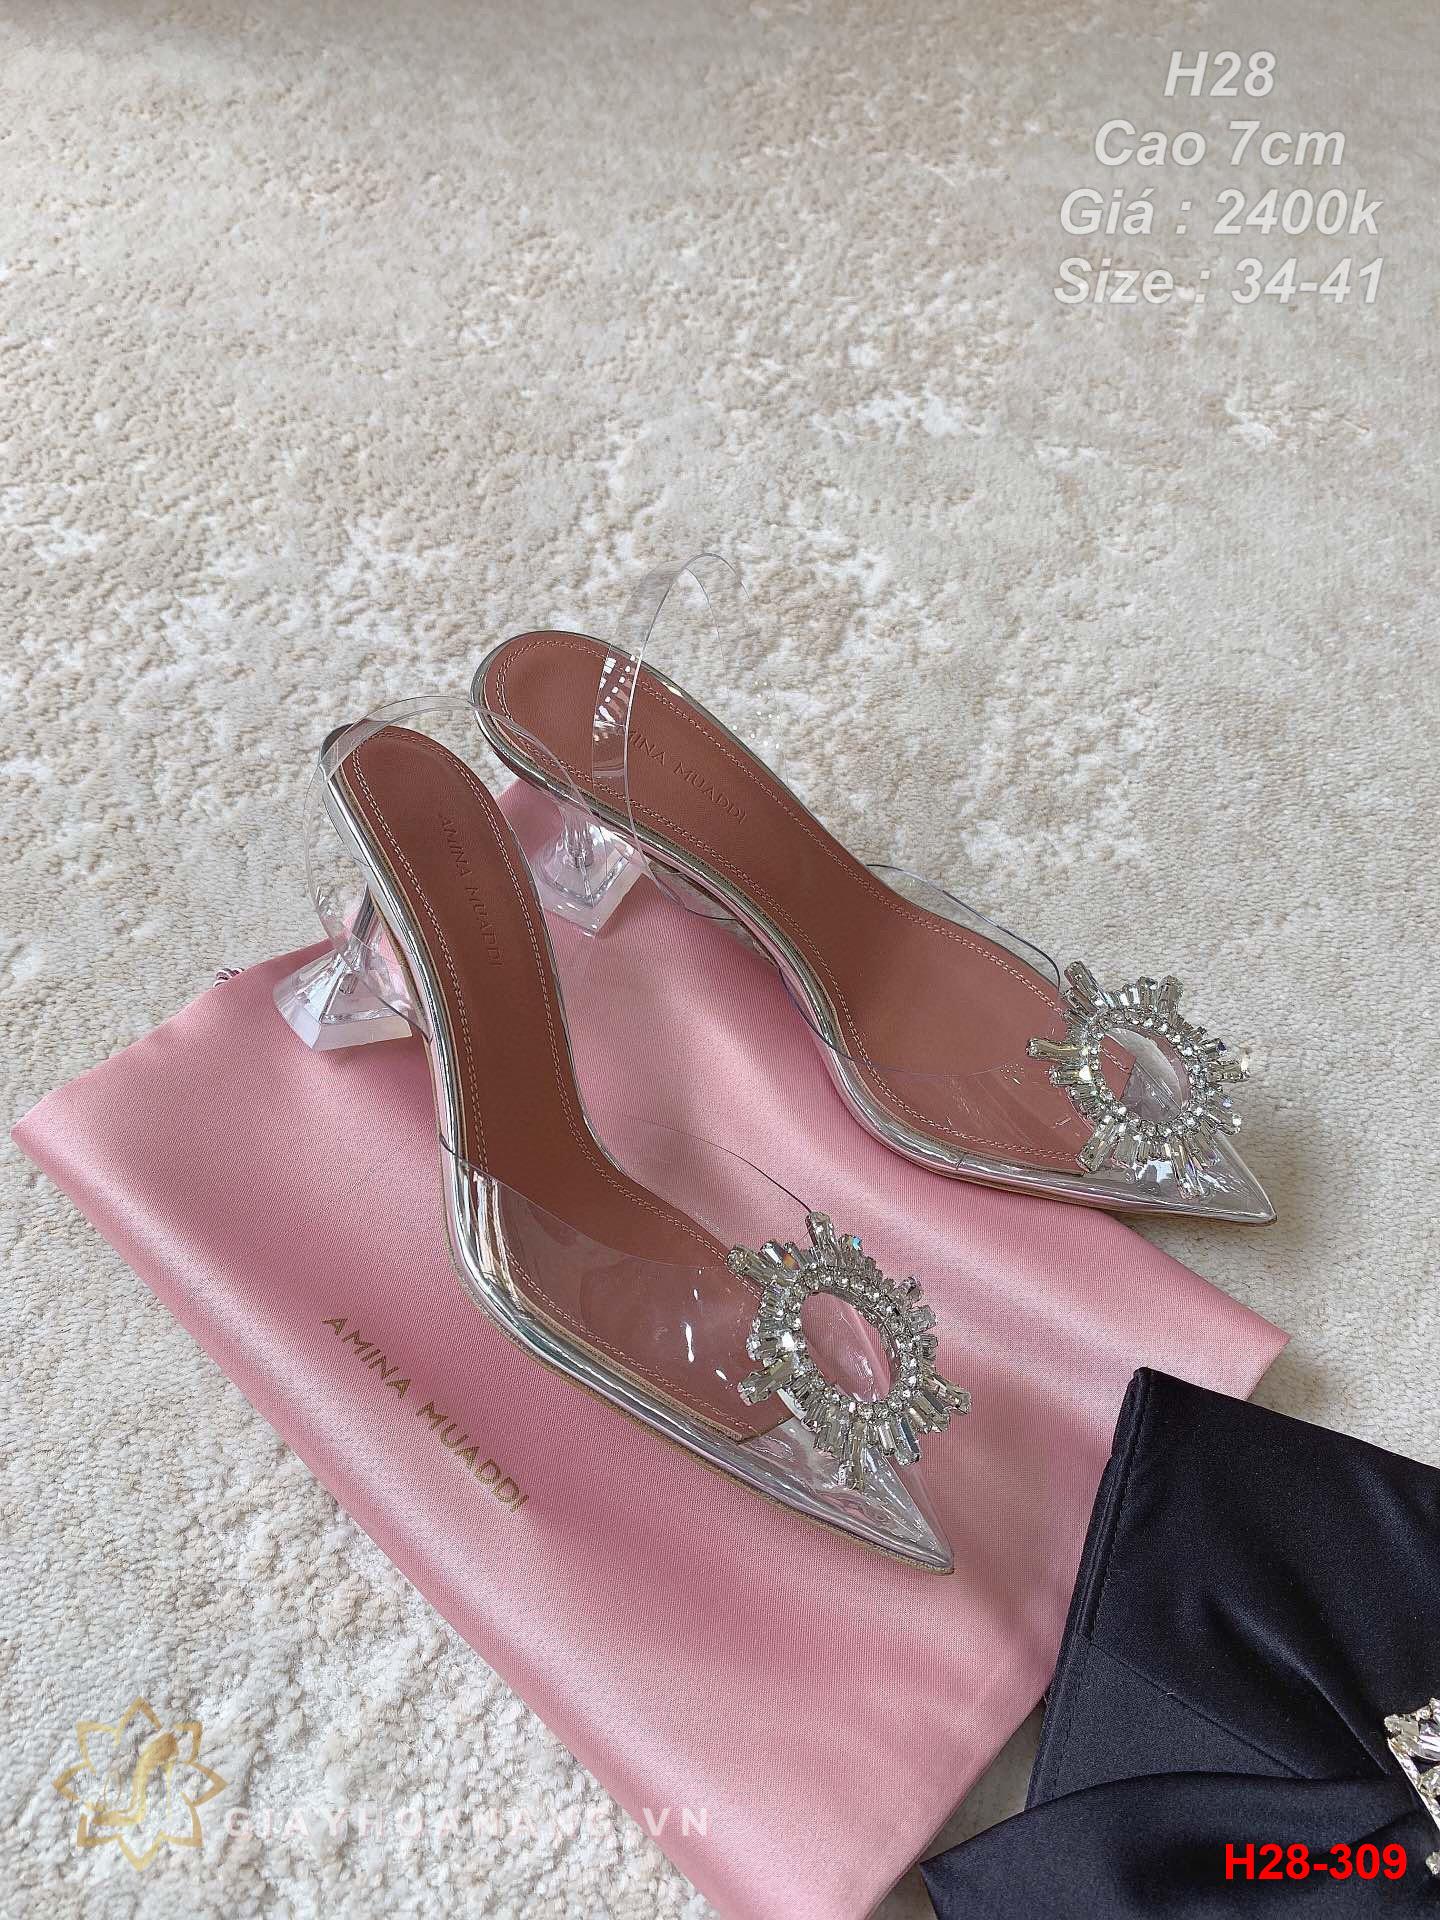 H28-309 Amina Muaddi sandal cao 7cm siêu cấp